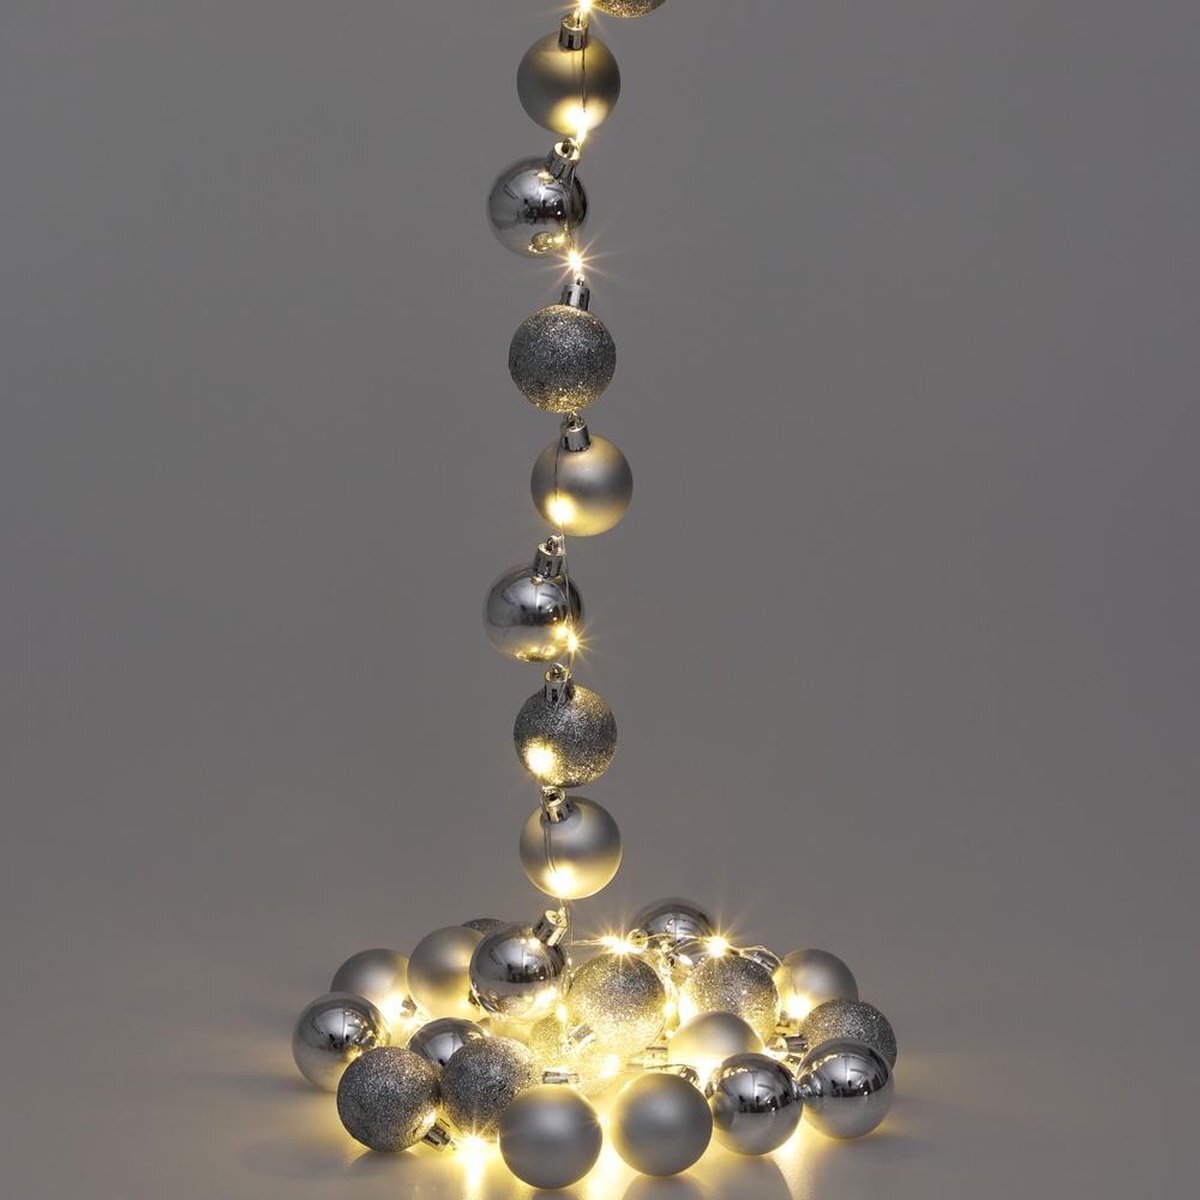 Casaria Kerstboomverlichting Kerstverlichting - met Kerstballen 40 LED - 2 m - Zilver